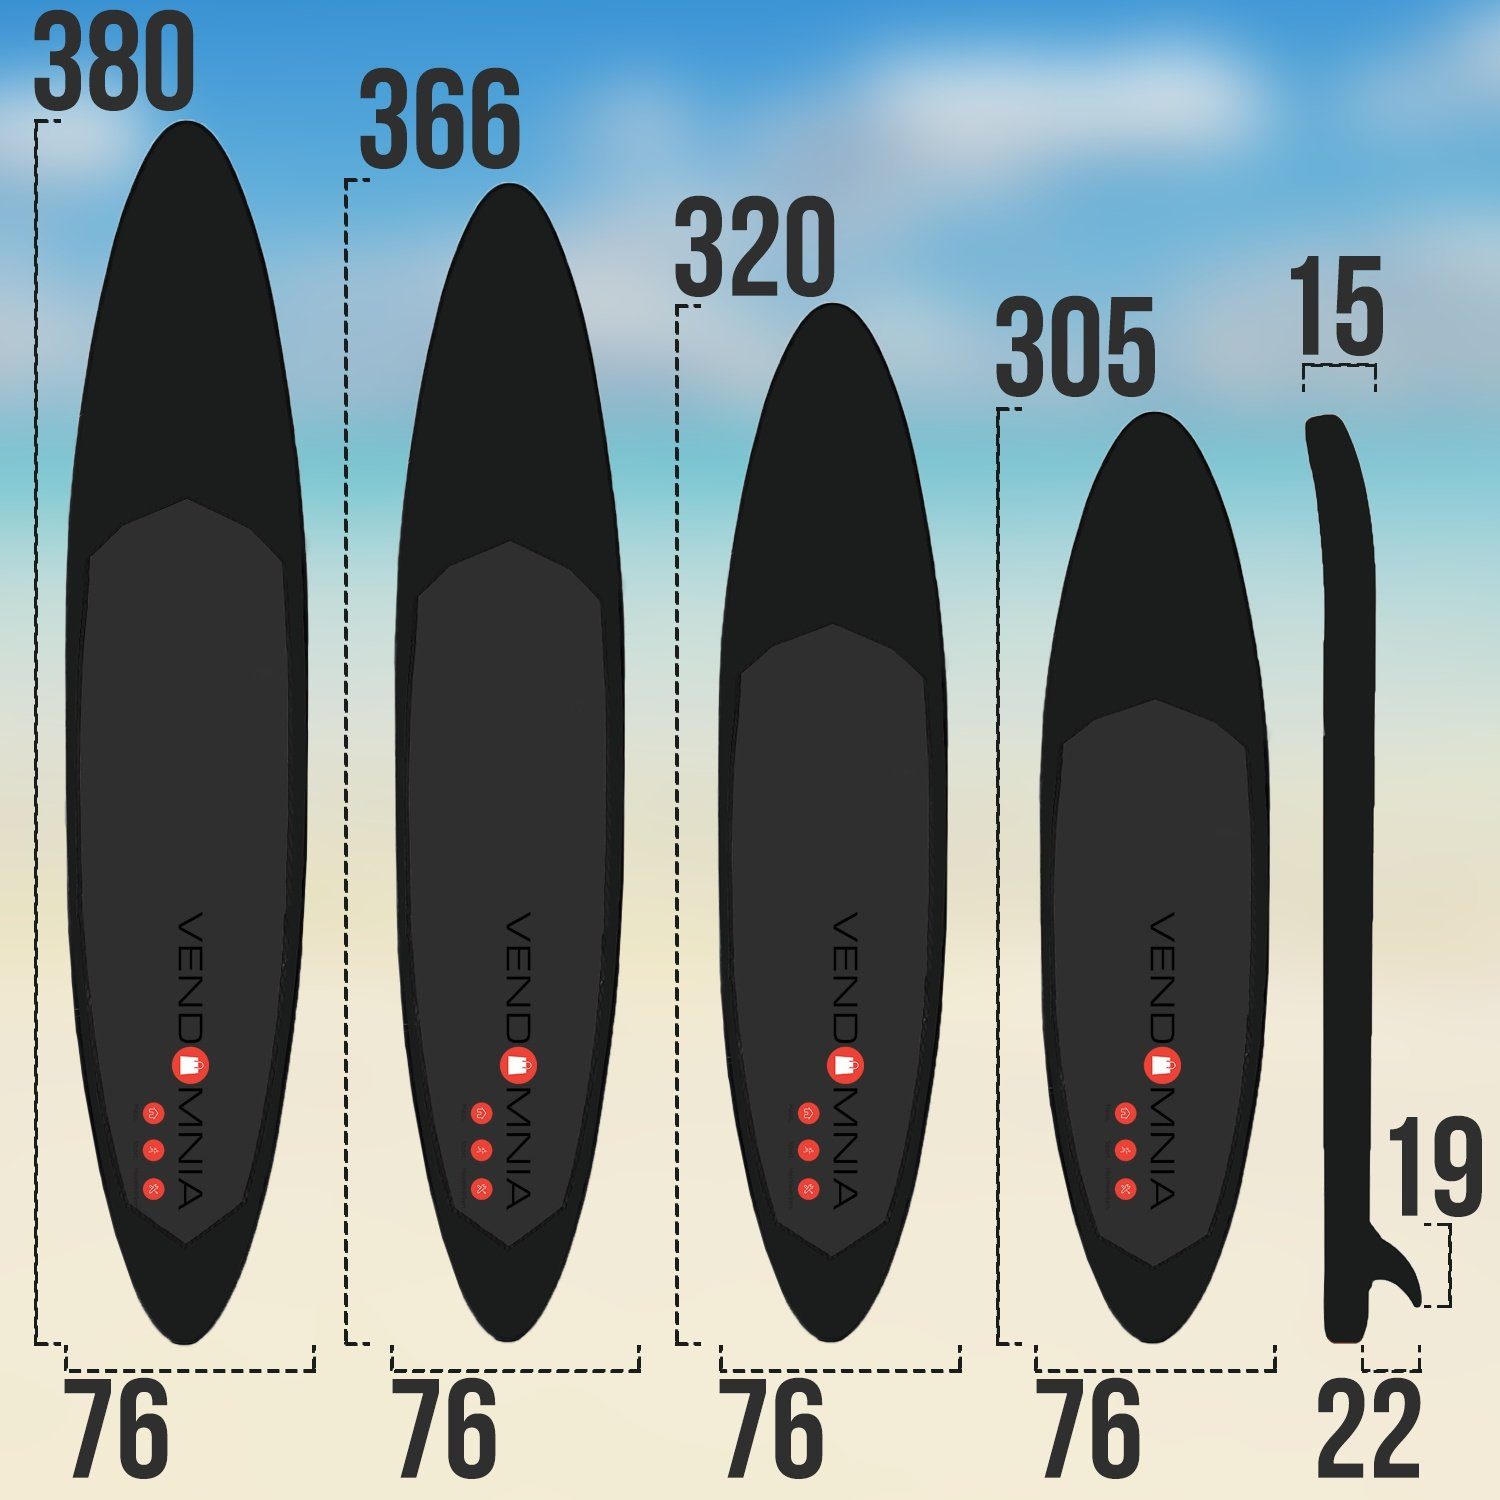 VENDOMNIA Inflatable SUP-Board Paddle kg, Modell PVC 4 Größen Paddling 7 Board, Up Set 305cm Tragetasche, dick, aufblasbar, cm Pumpe, Schichten, 366cm max - Weiß-Orange (15 board, 130 3 Surfboard) 380cm, 320cm Paddelboard, Zubehör, 4: Farben, Stand